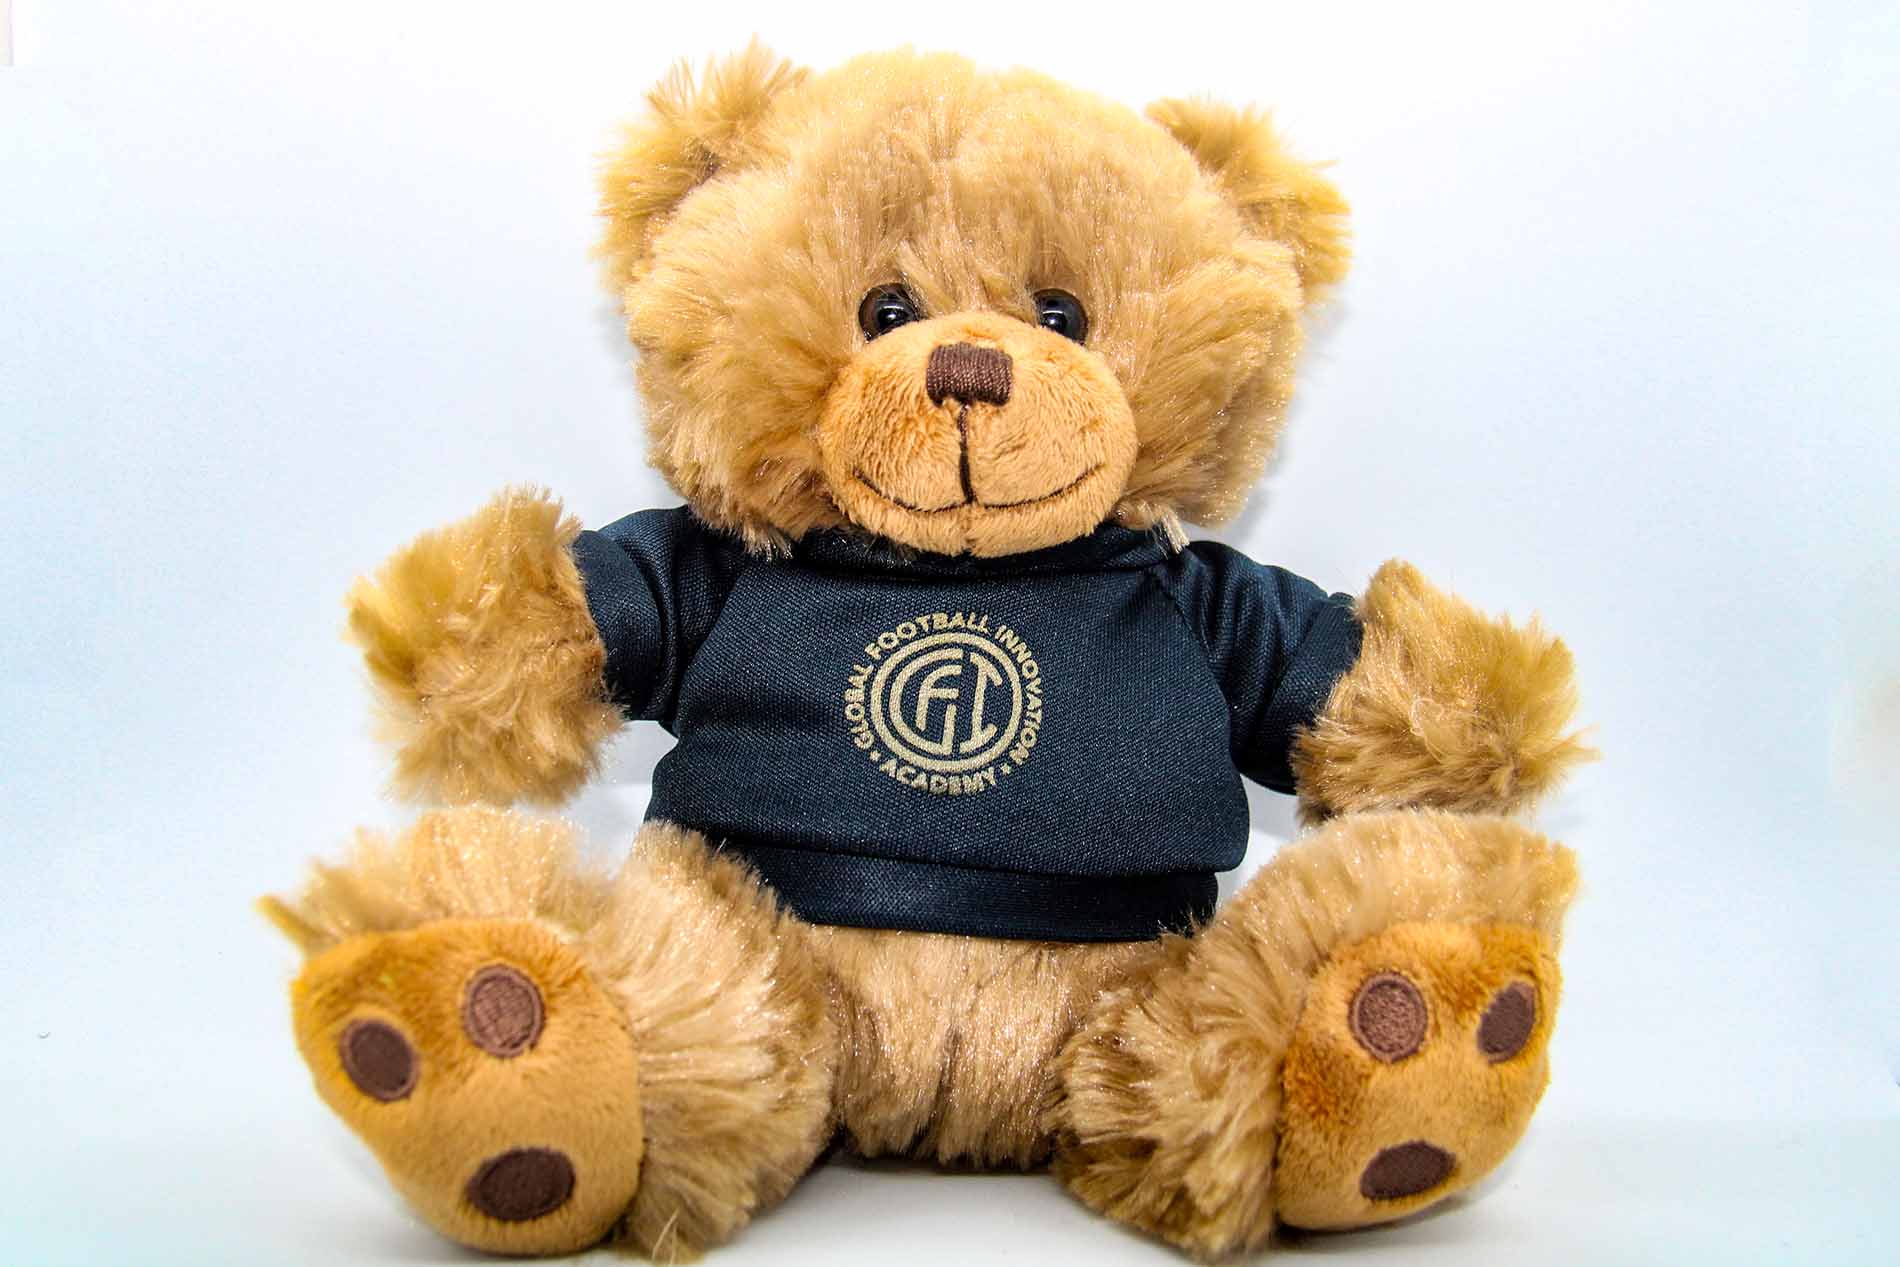 GFI Teddy Bear